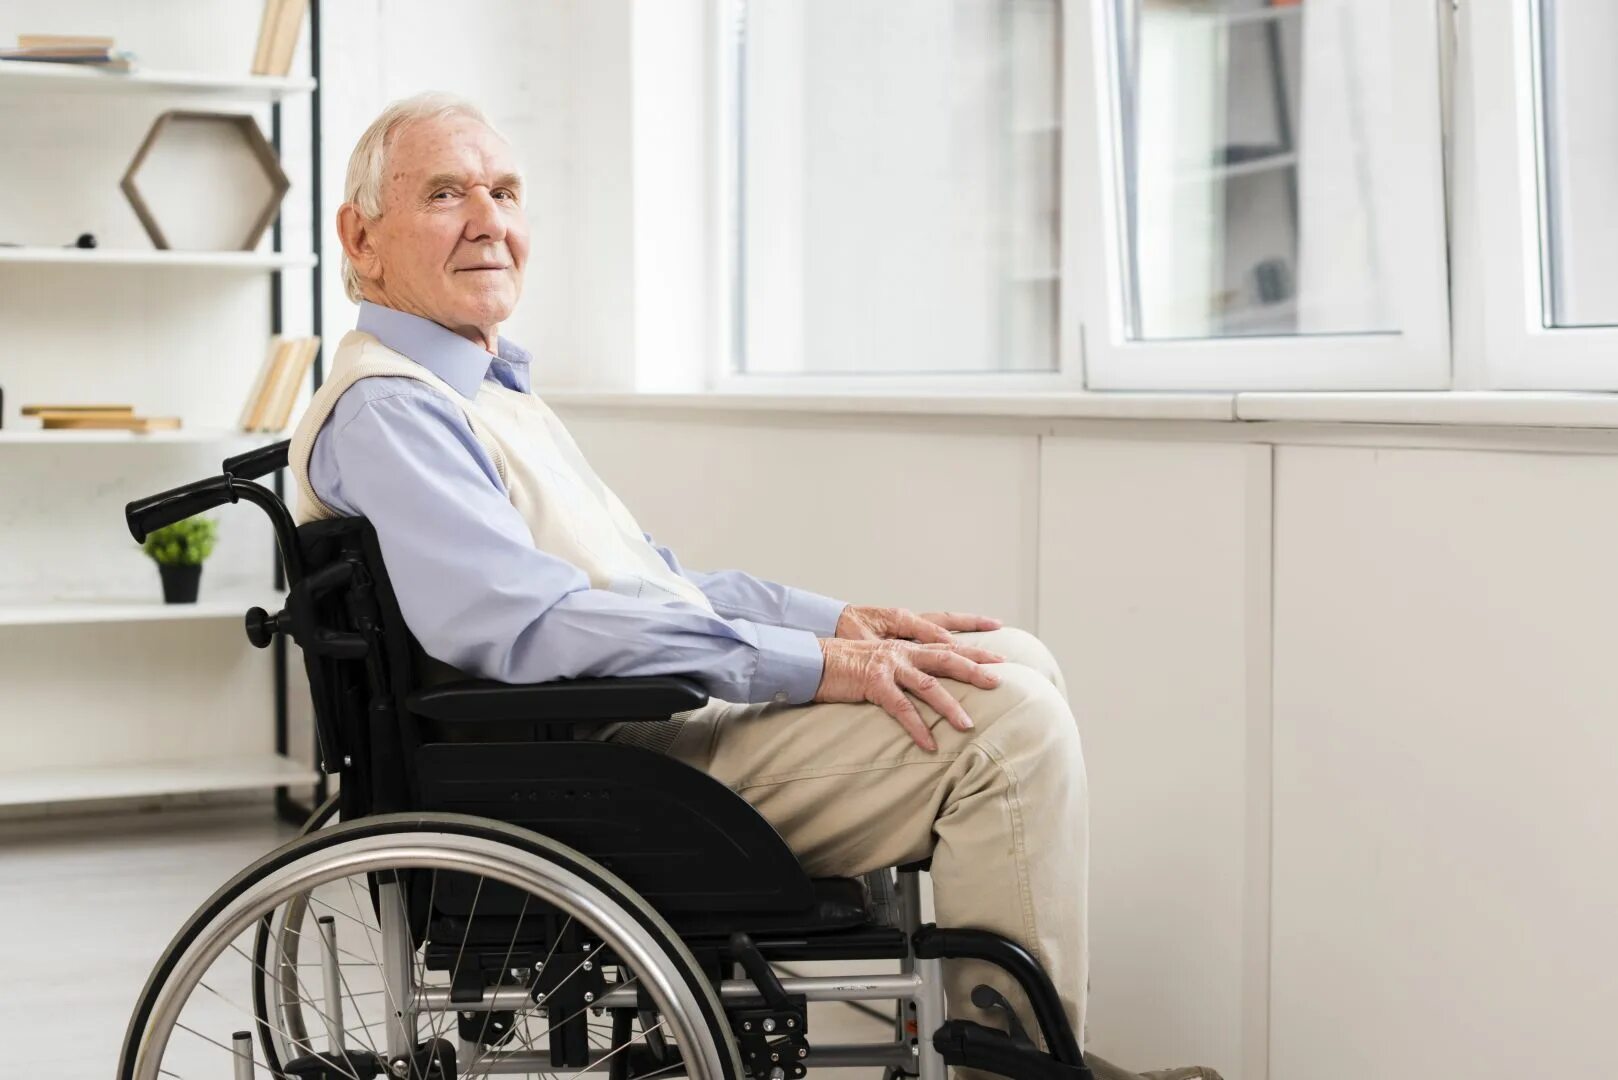 В скромно обставленном кабинете сидел пожилой человек. Пожилой мужчина в инвалидной коляске. Коляска для инвалидов. Инвалид старик в магазине. Фото пожилого человека в инвалидном кресле.